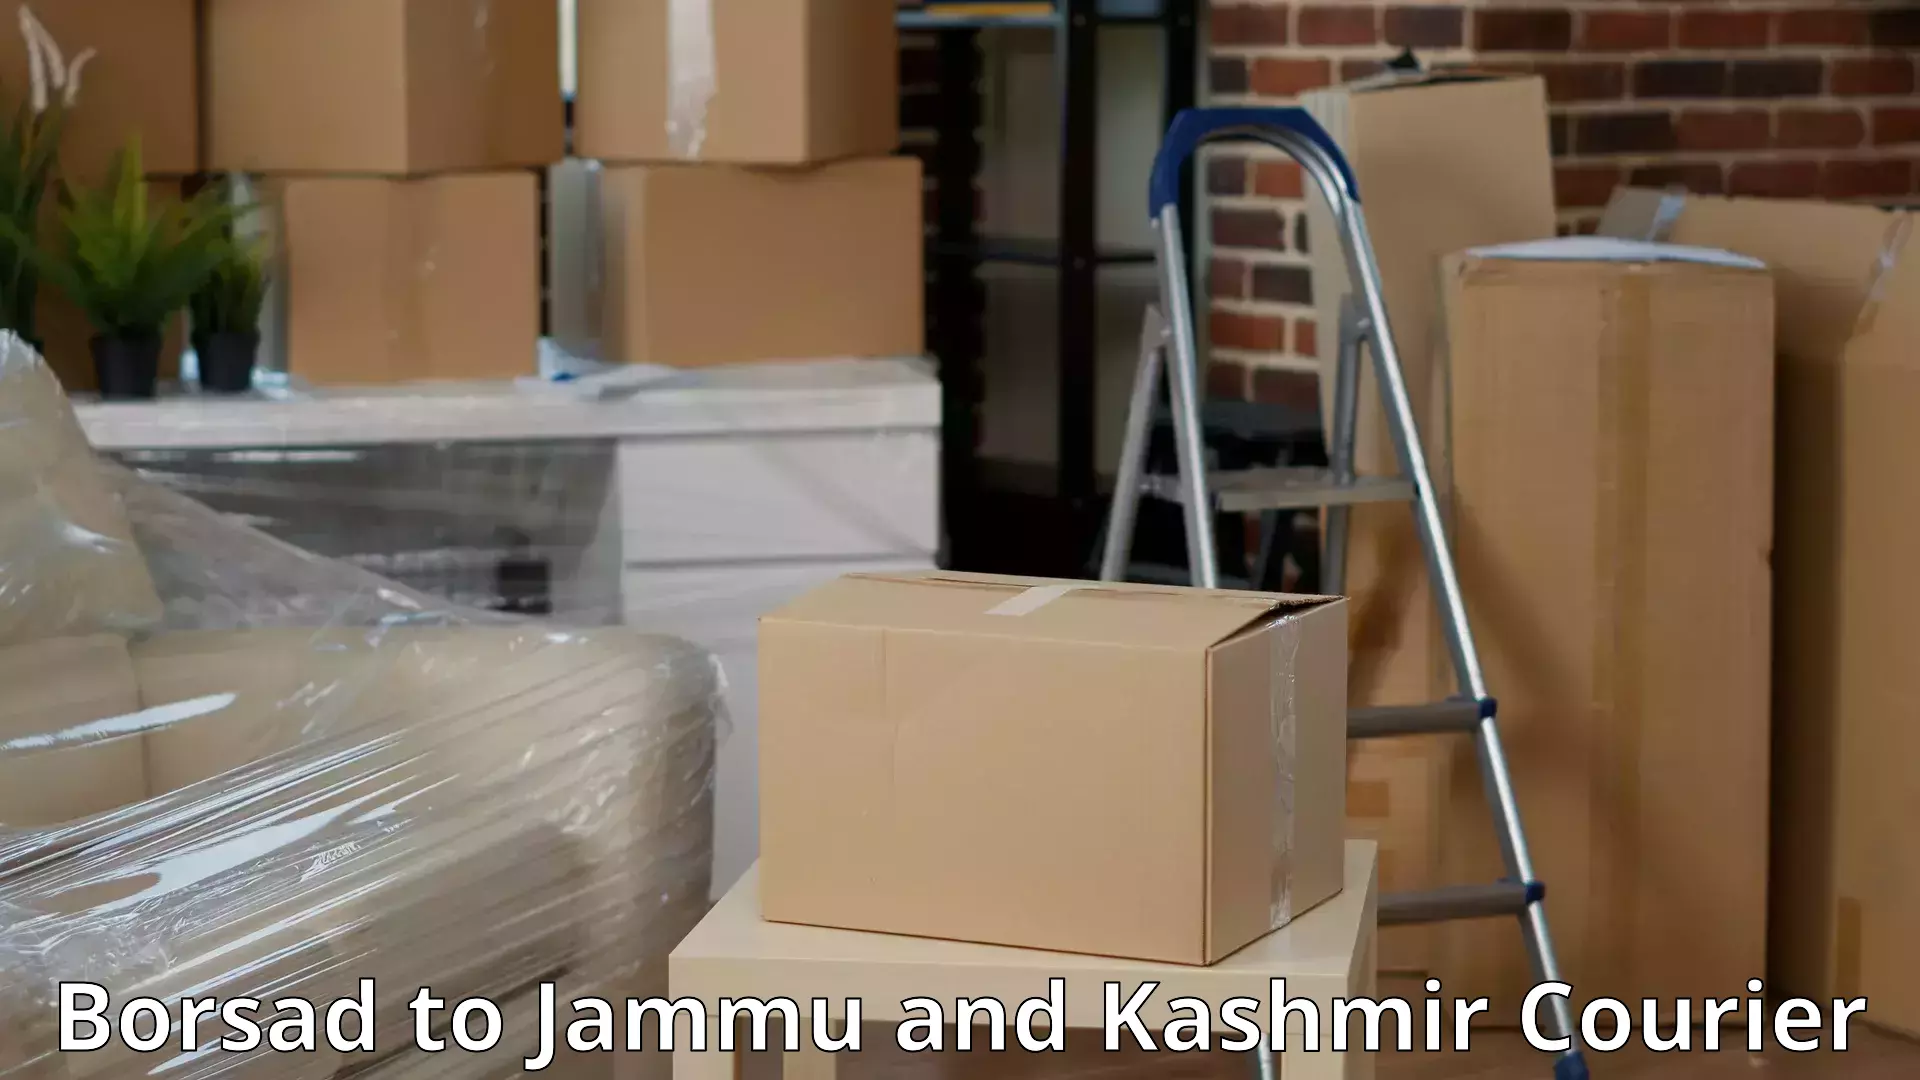 Reliable furniture movers Borsad to Jammu and Kashmir